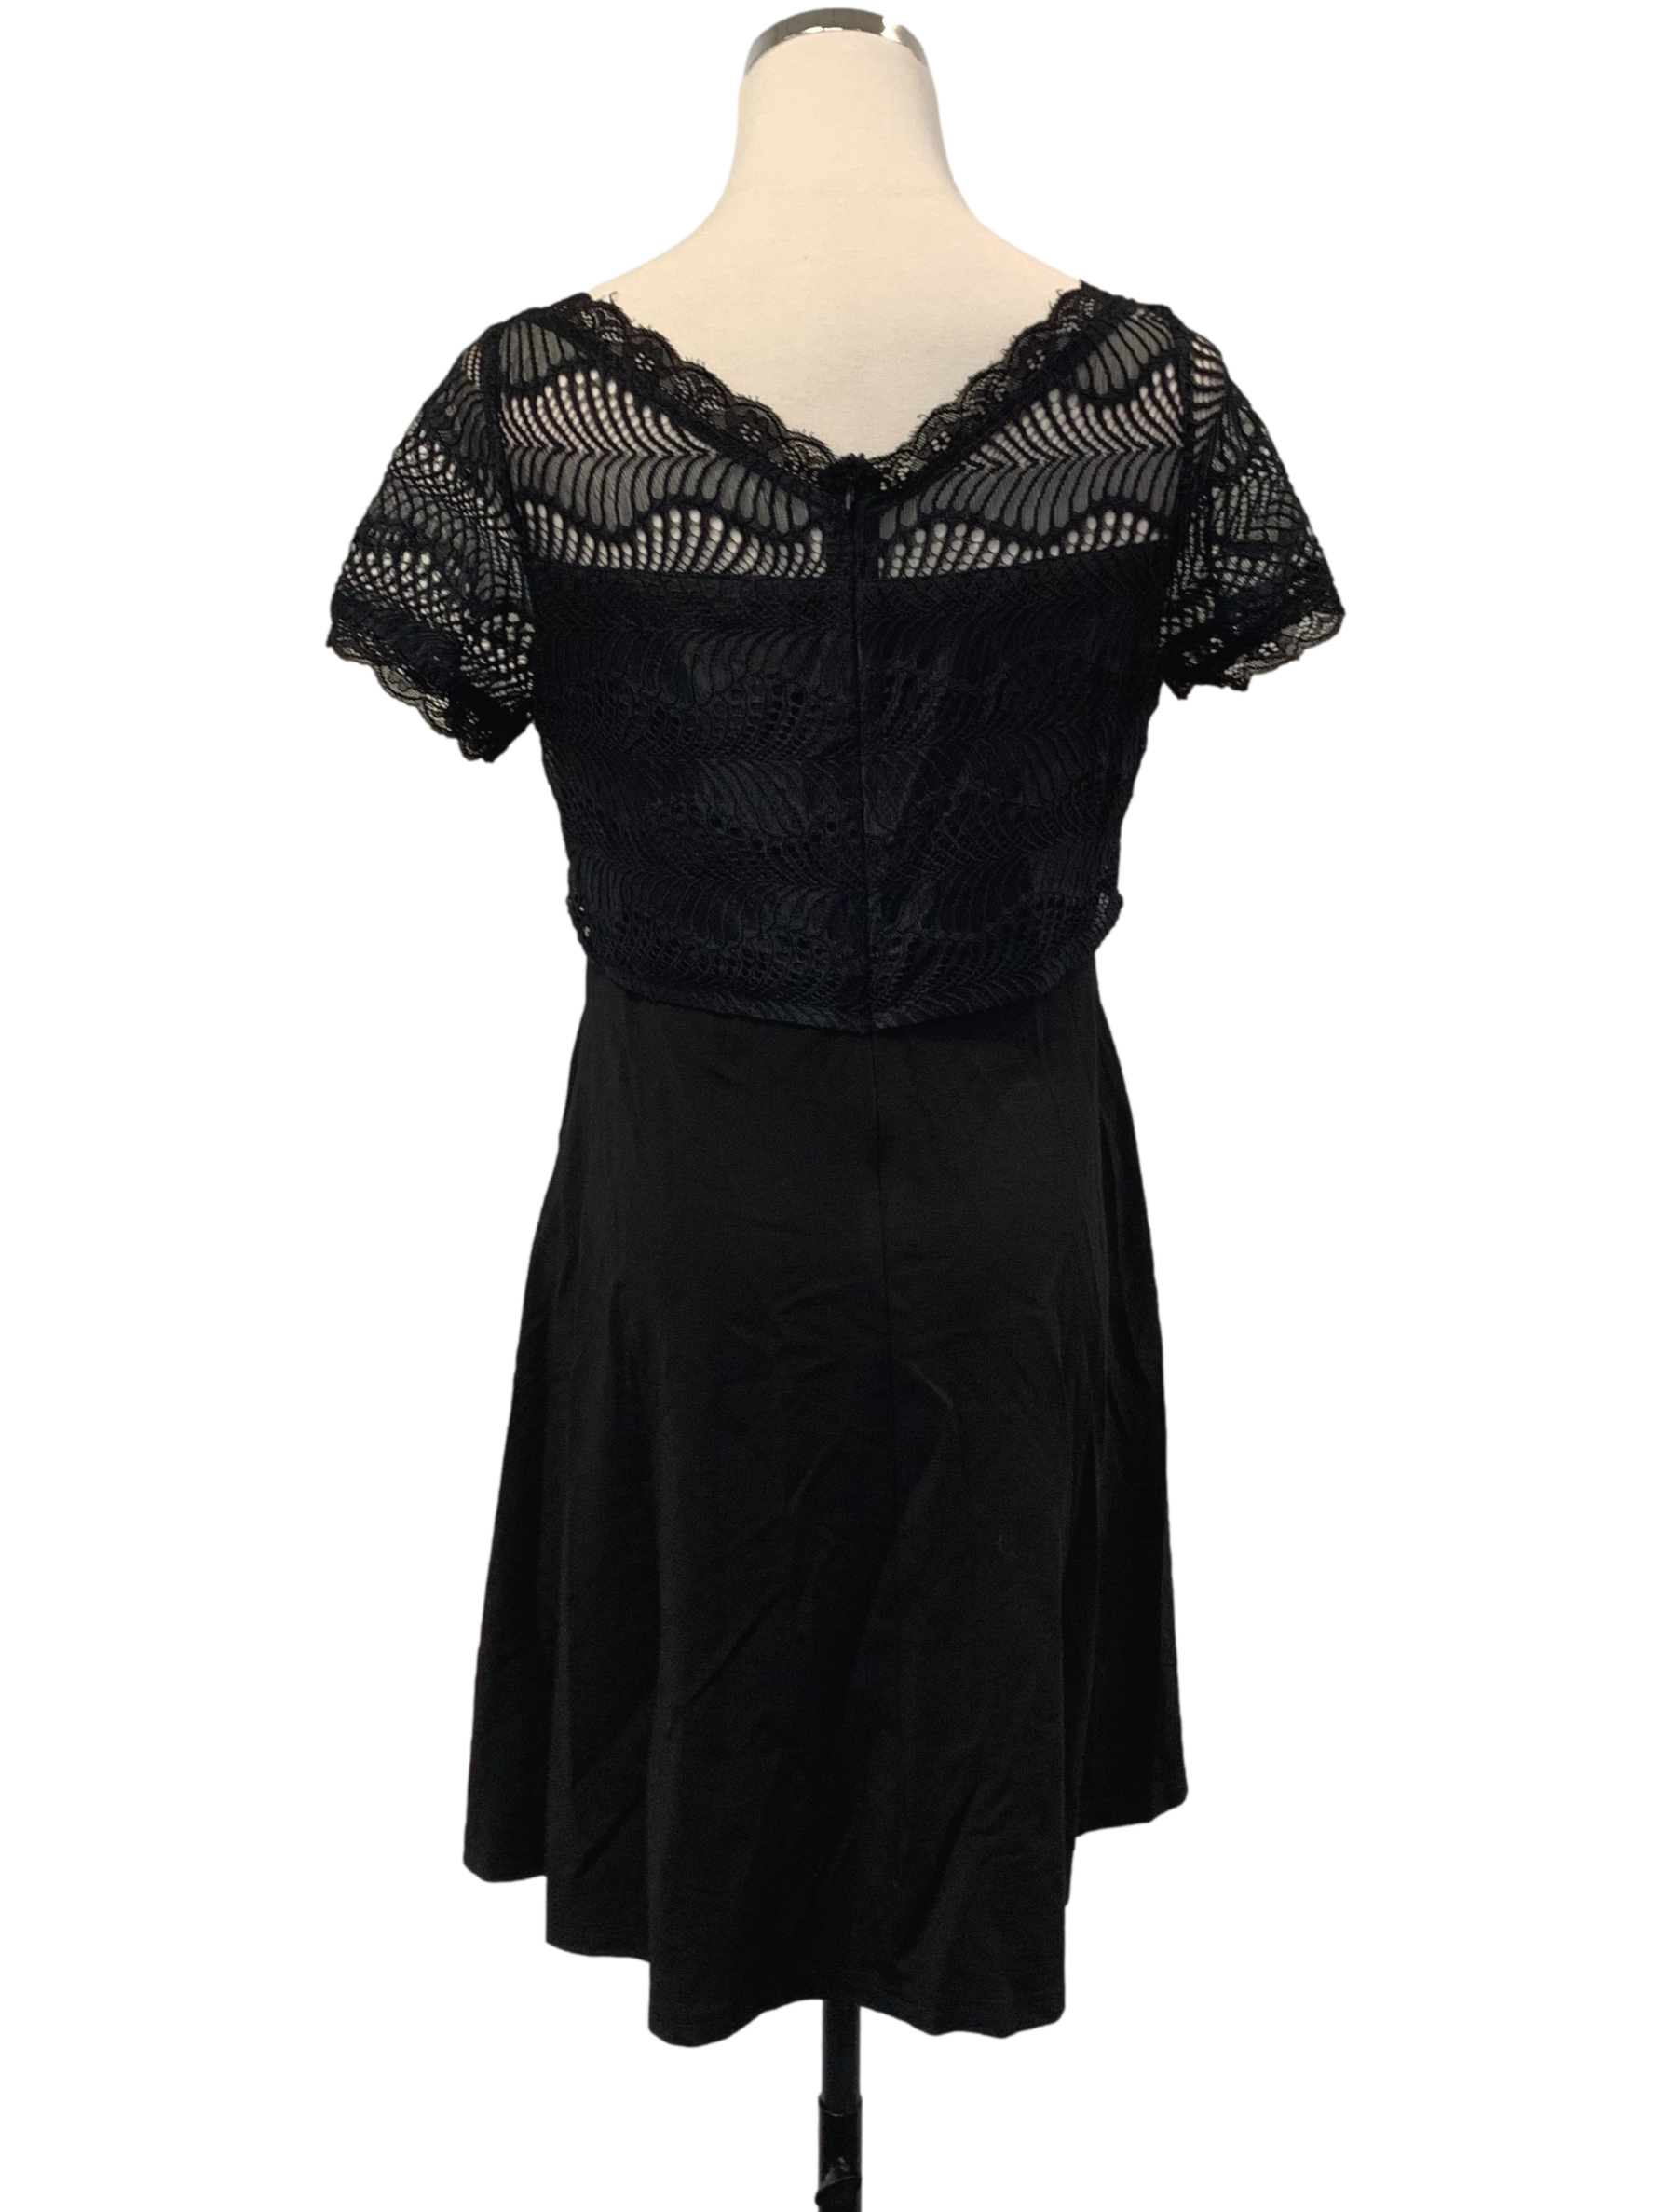 Ebony Black Lace A Line Dress